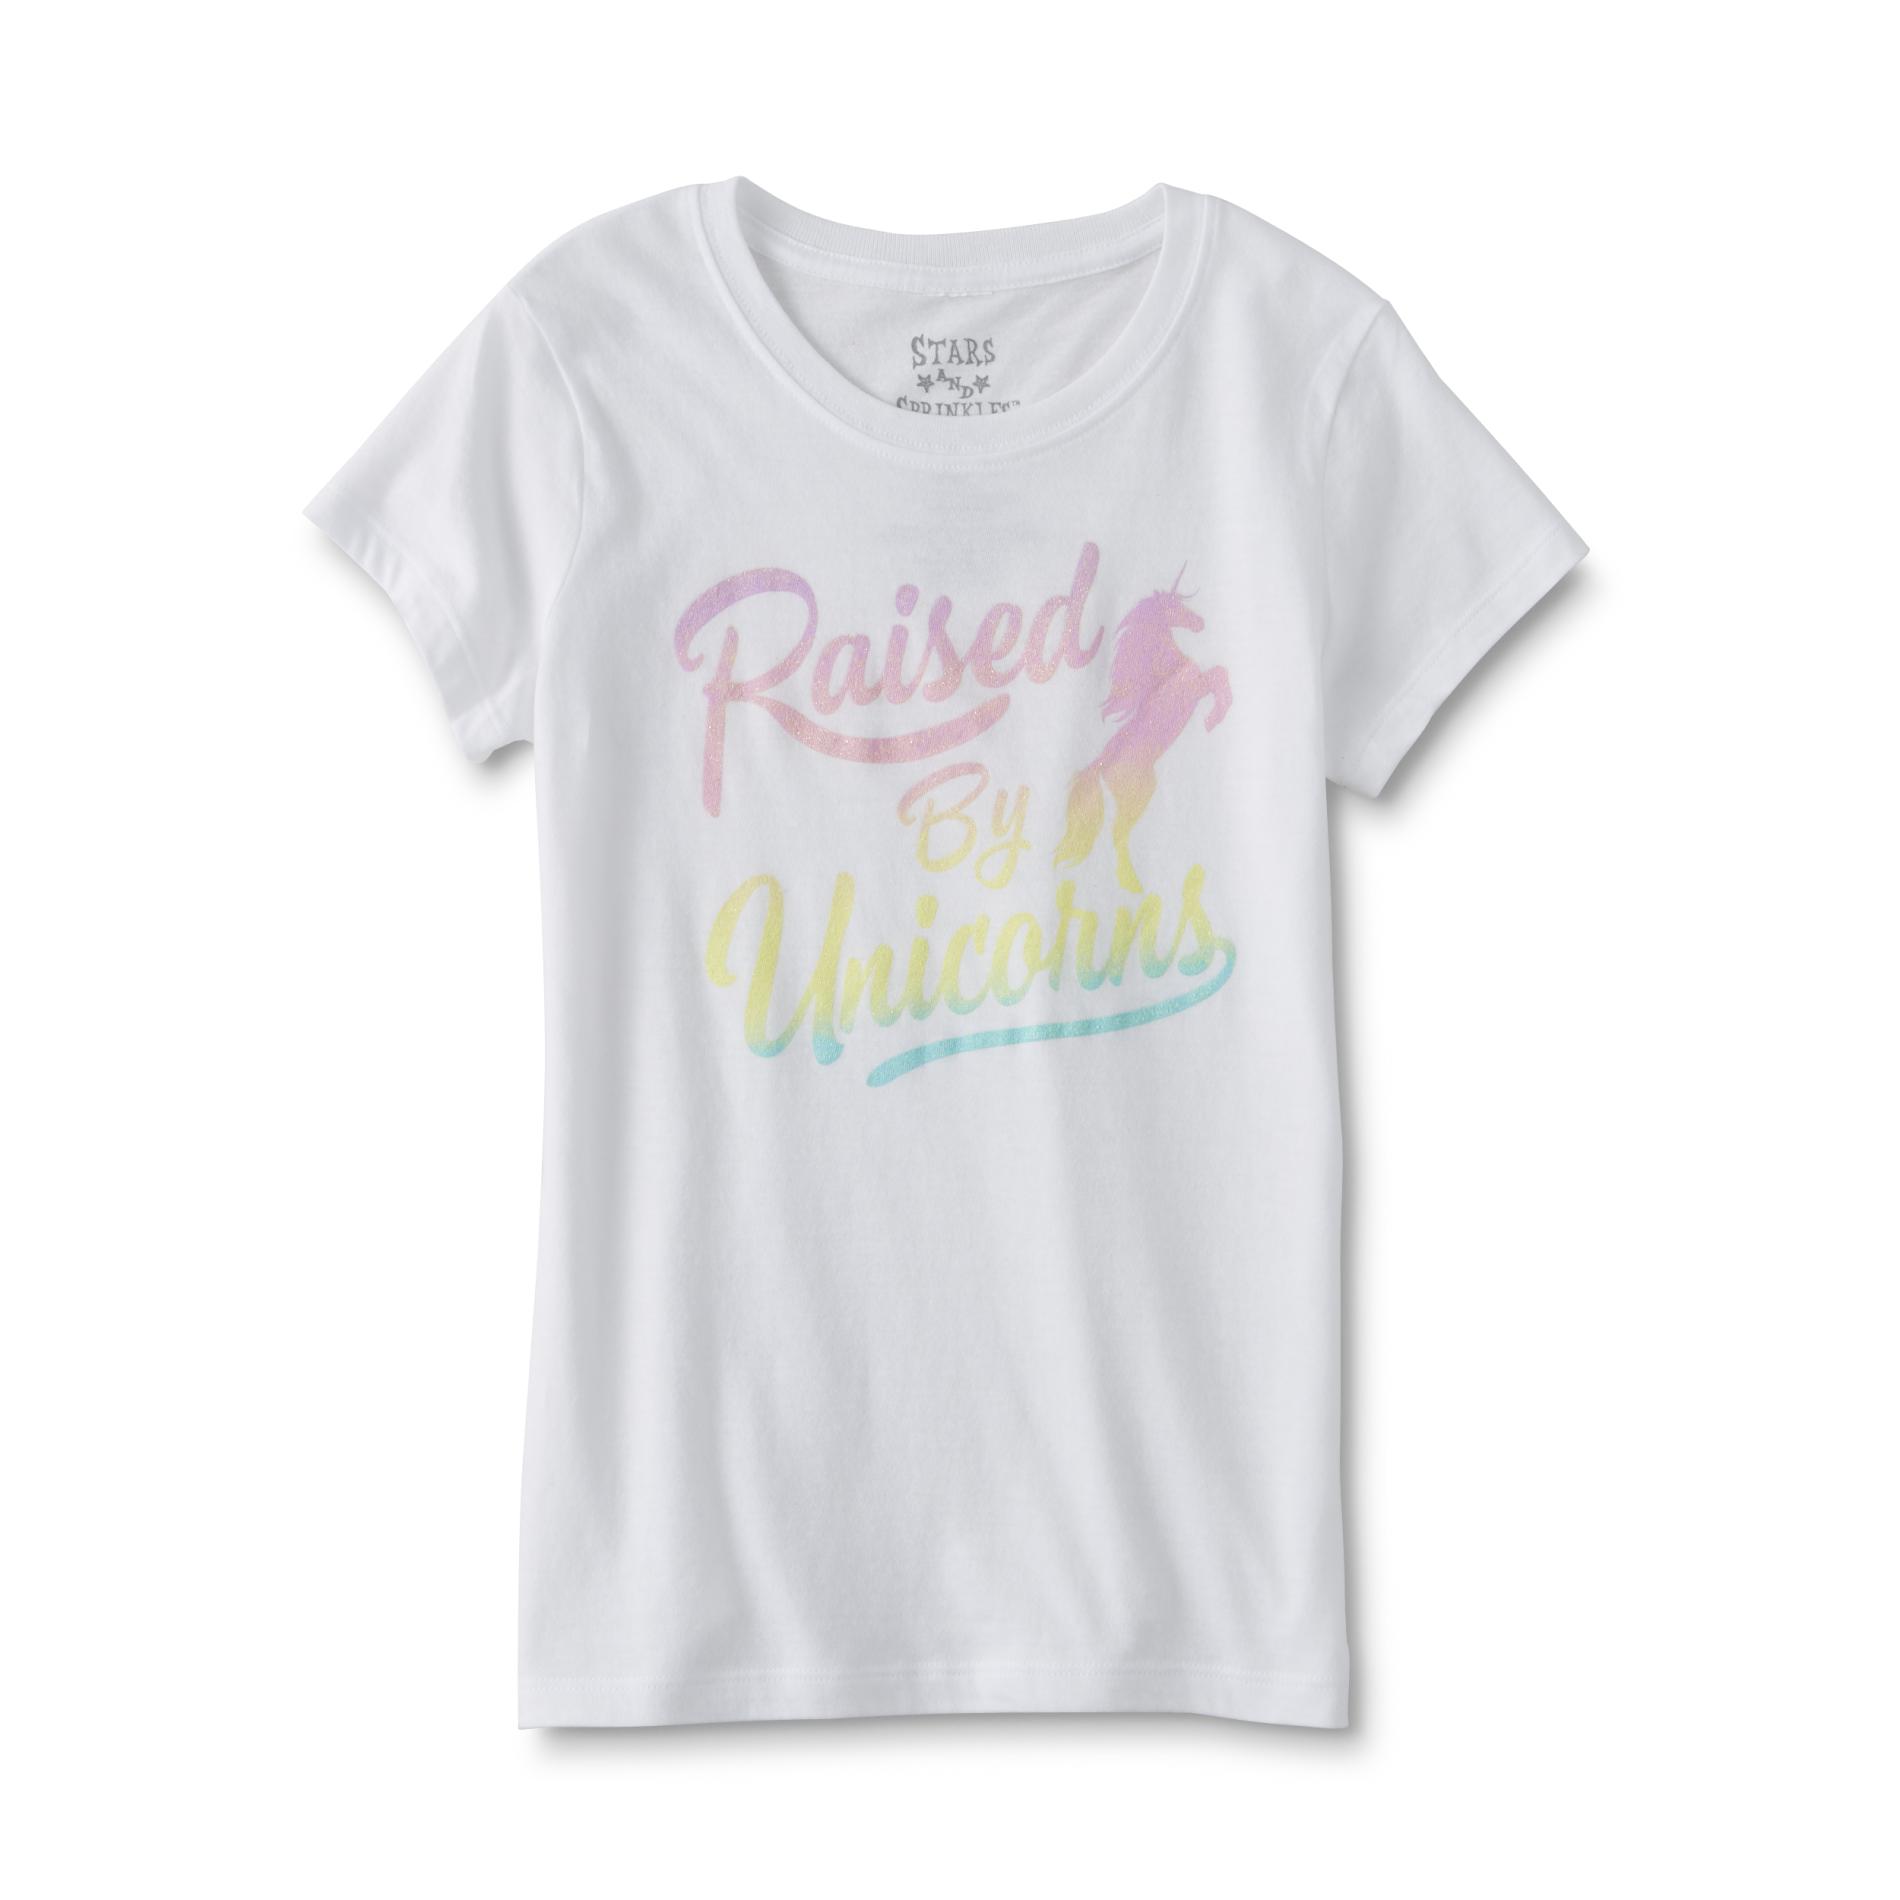 Hybrid Girl's Graphic T-Shirt - Raised by Unicorns